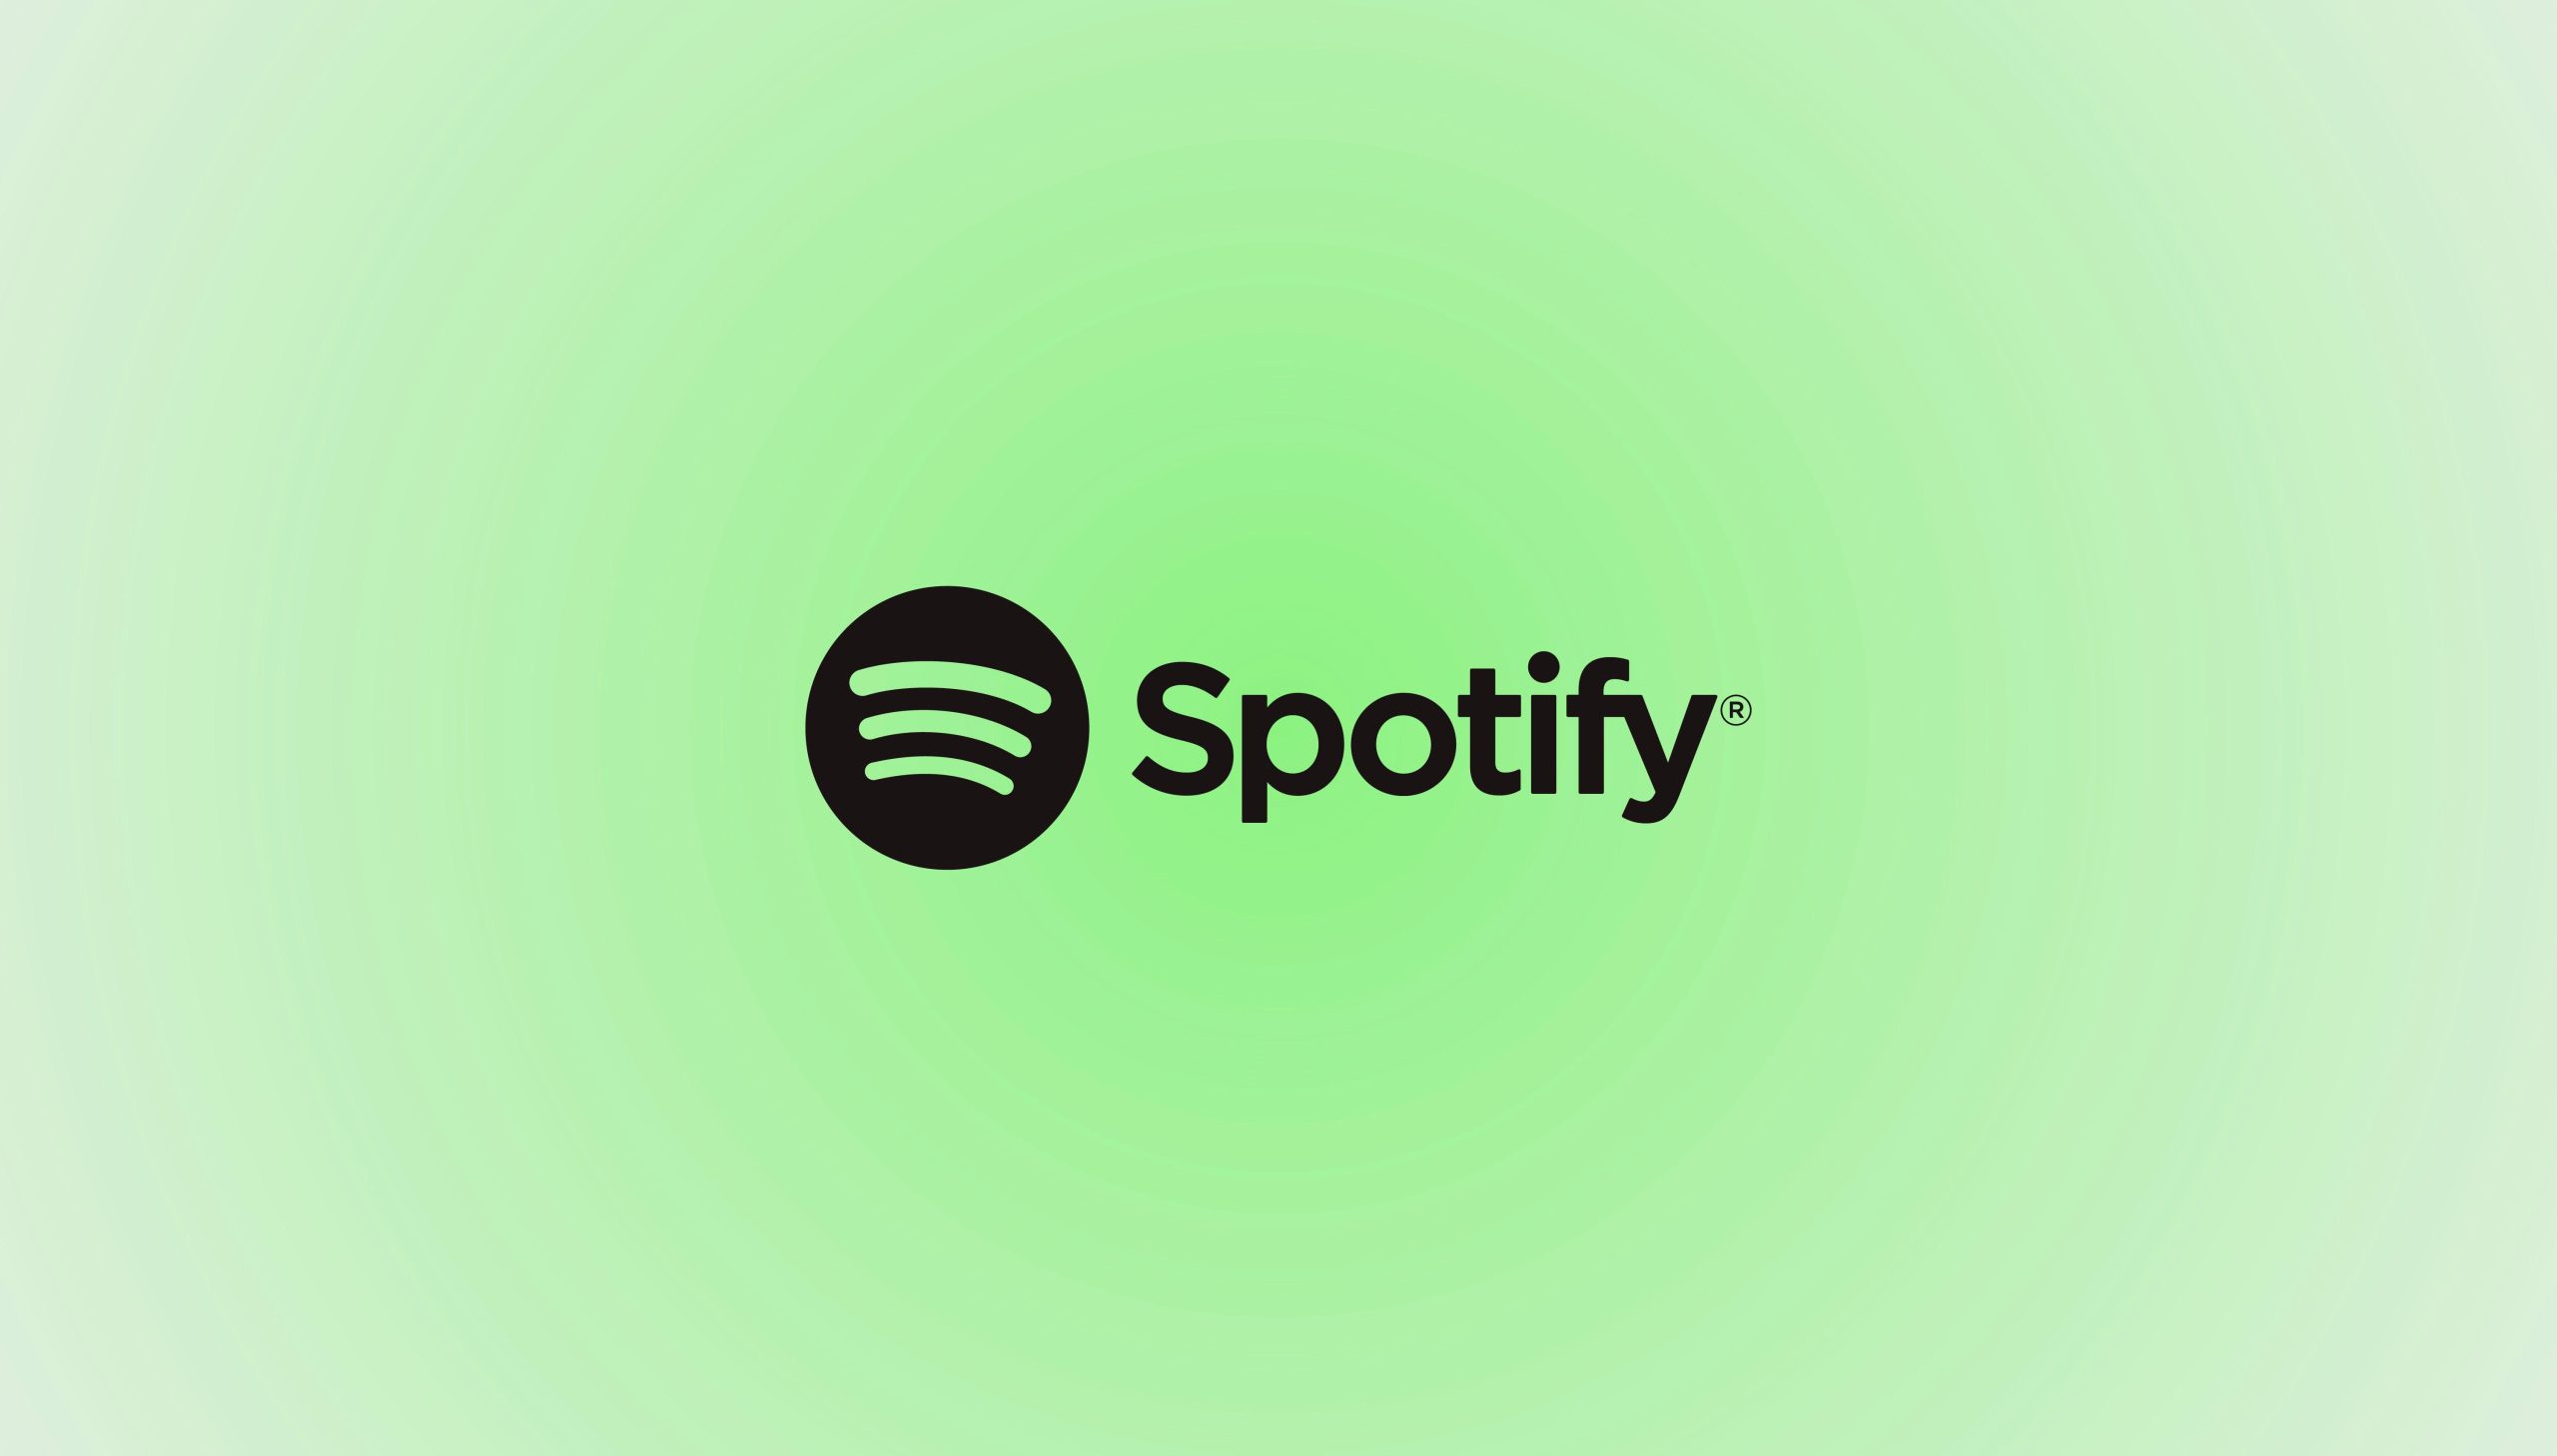 Spotify, yeni yazı tipi Spotify Mix’i tanıttı: Logo dahil her yerde kullanılacak